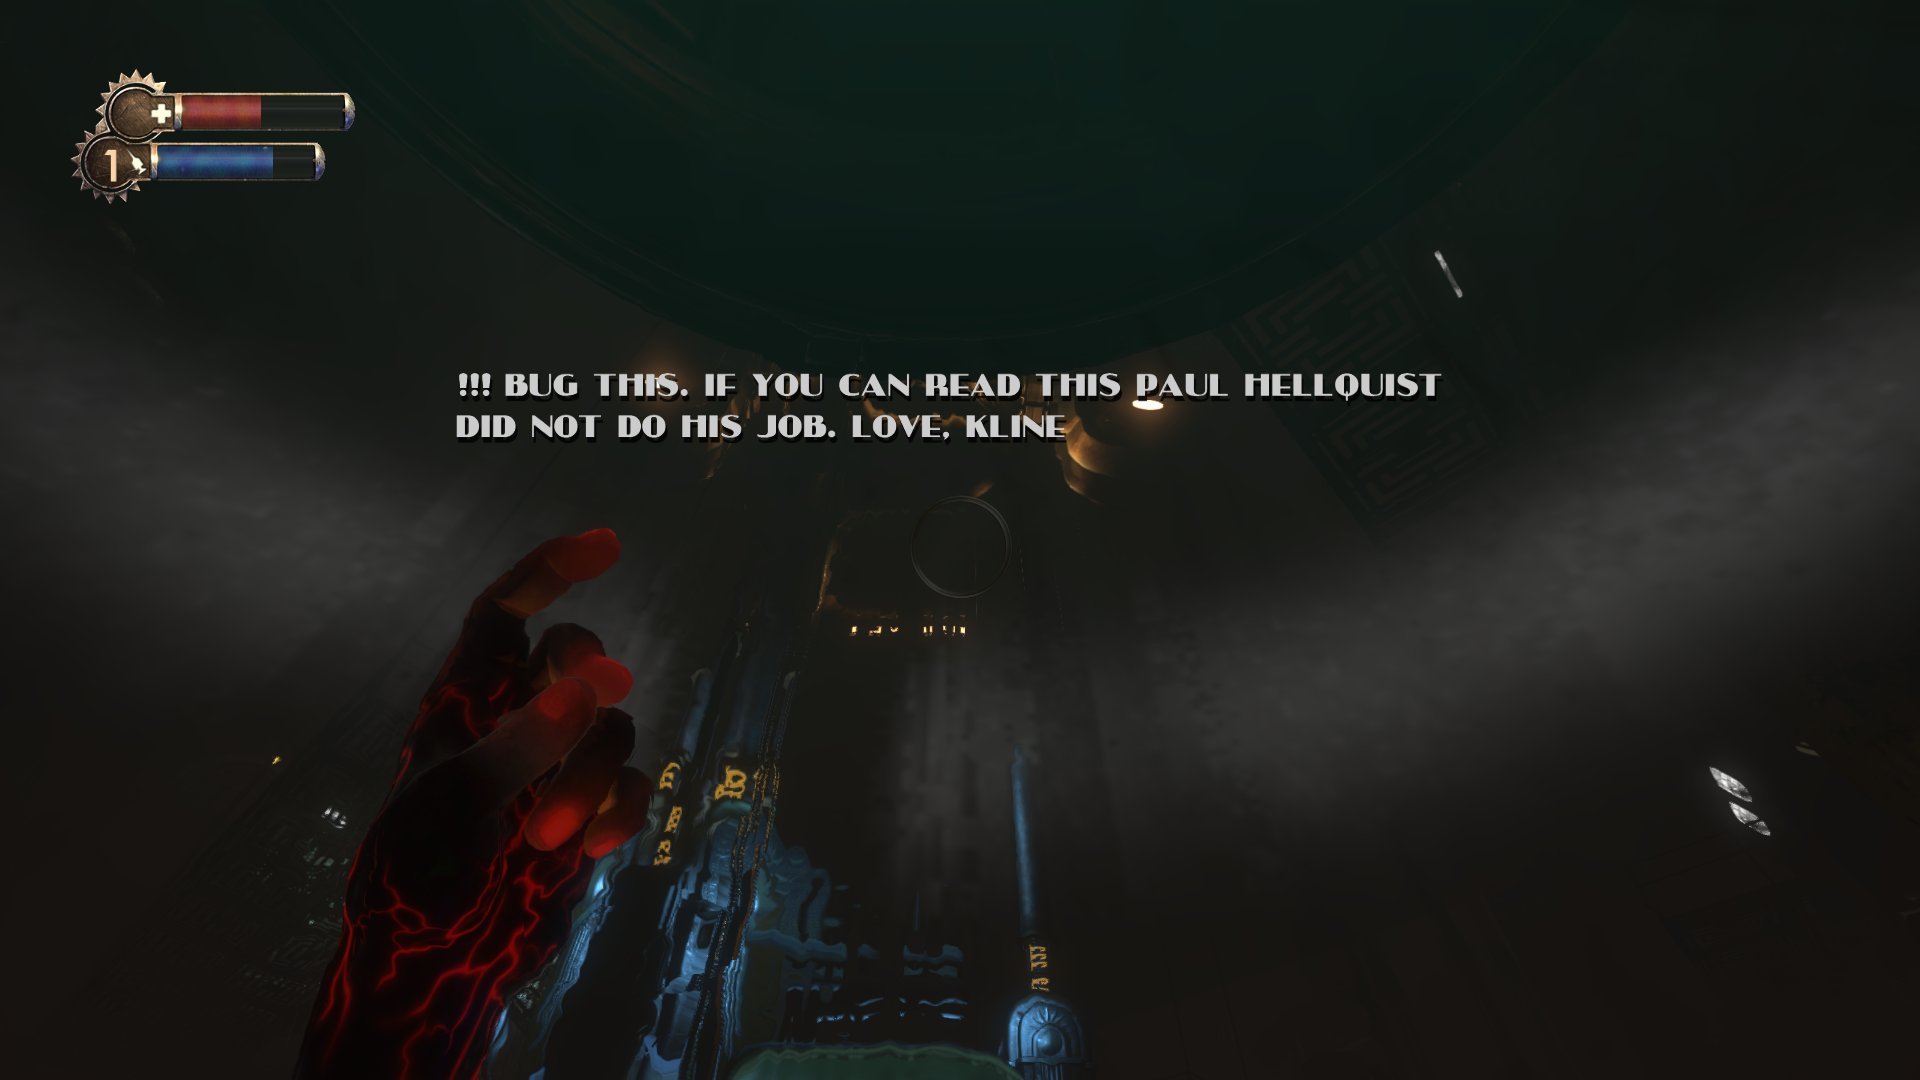 Revelado modo 1999 em BioShock Infinite